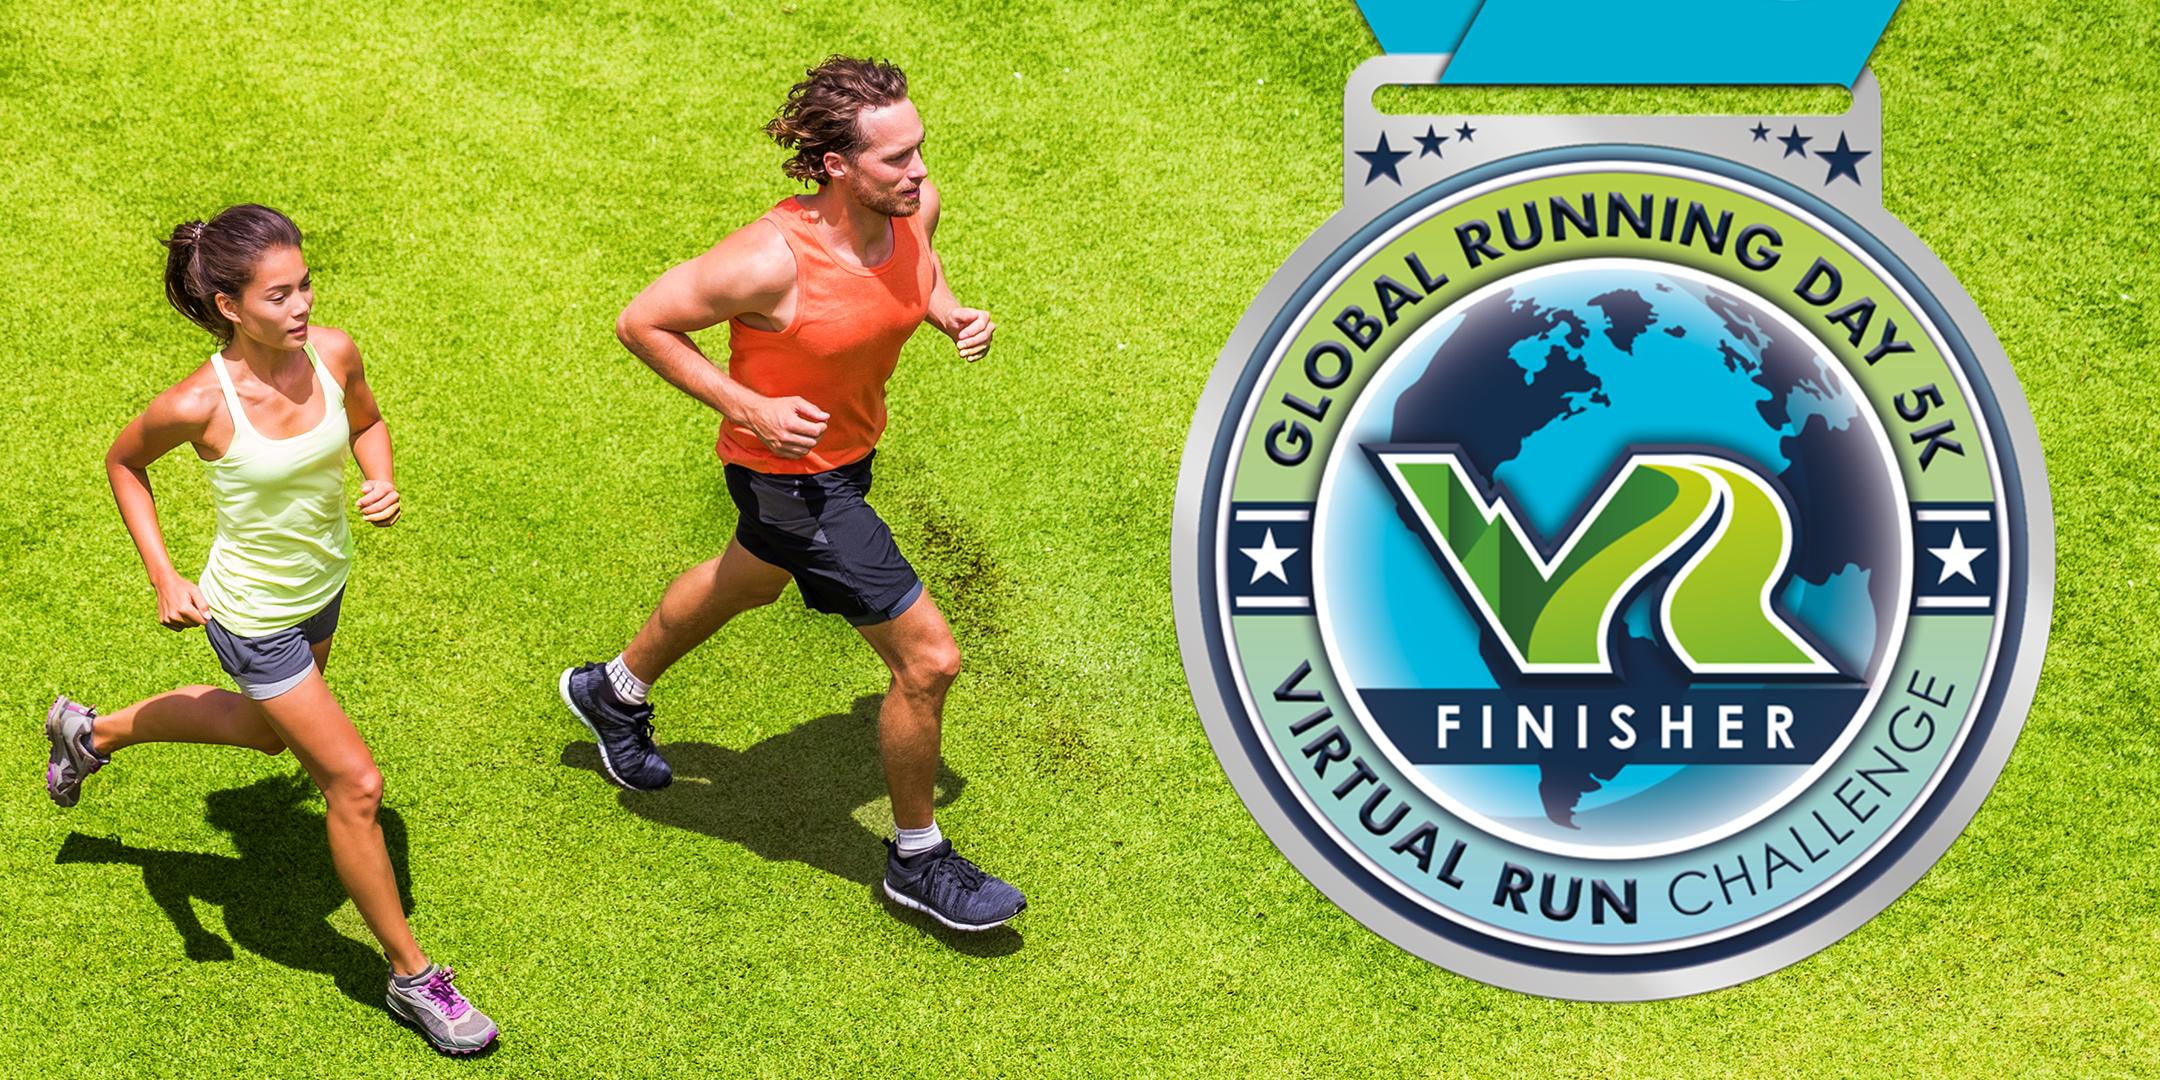 2020 Global Running Day Free Virtual 5k - Surprise